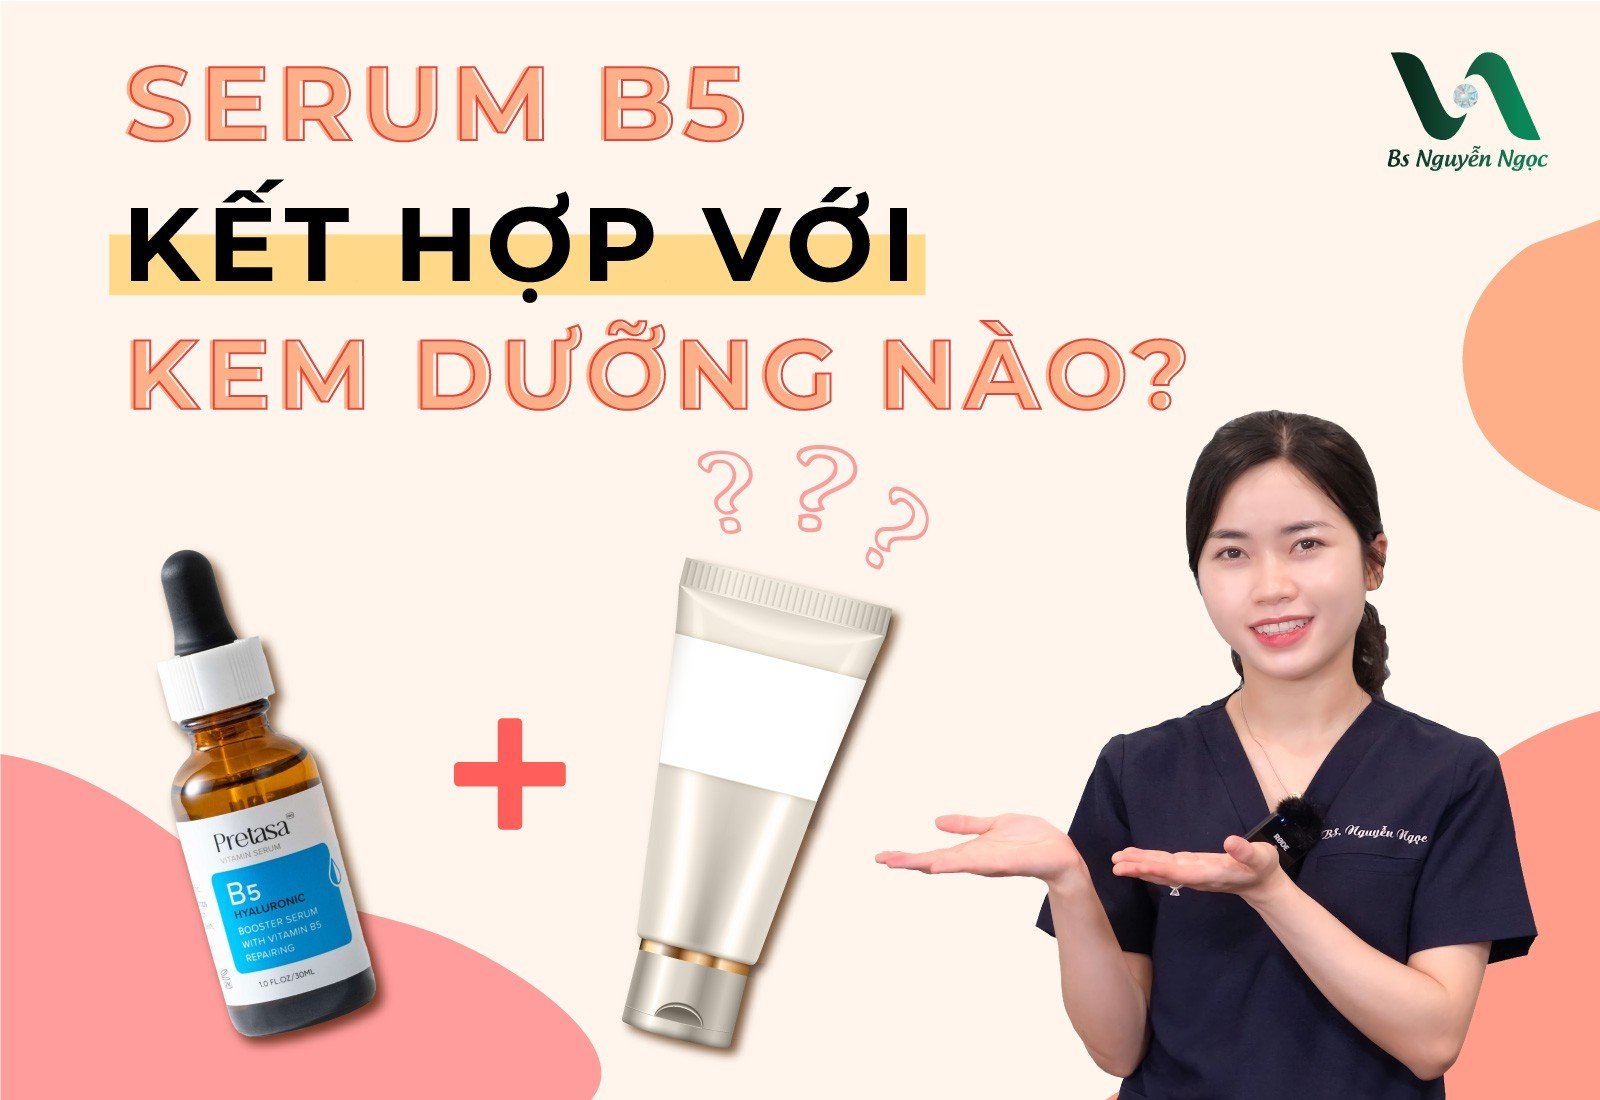 Serum B5 kết hợp với kem dưỡng nào?